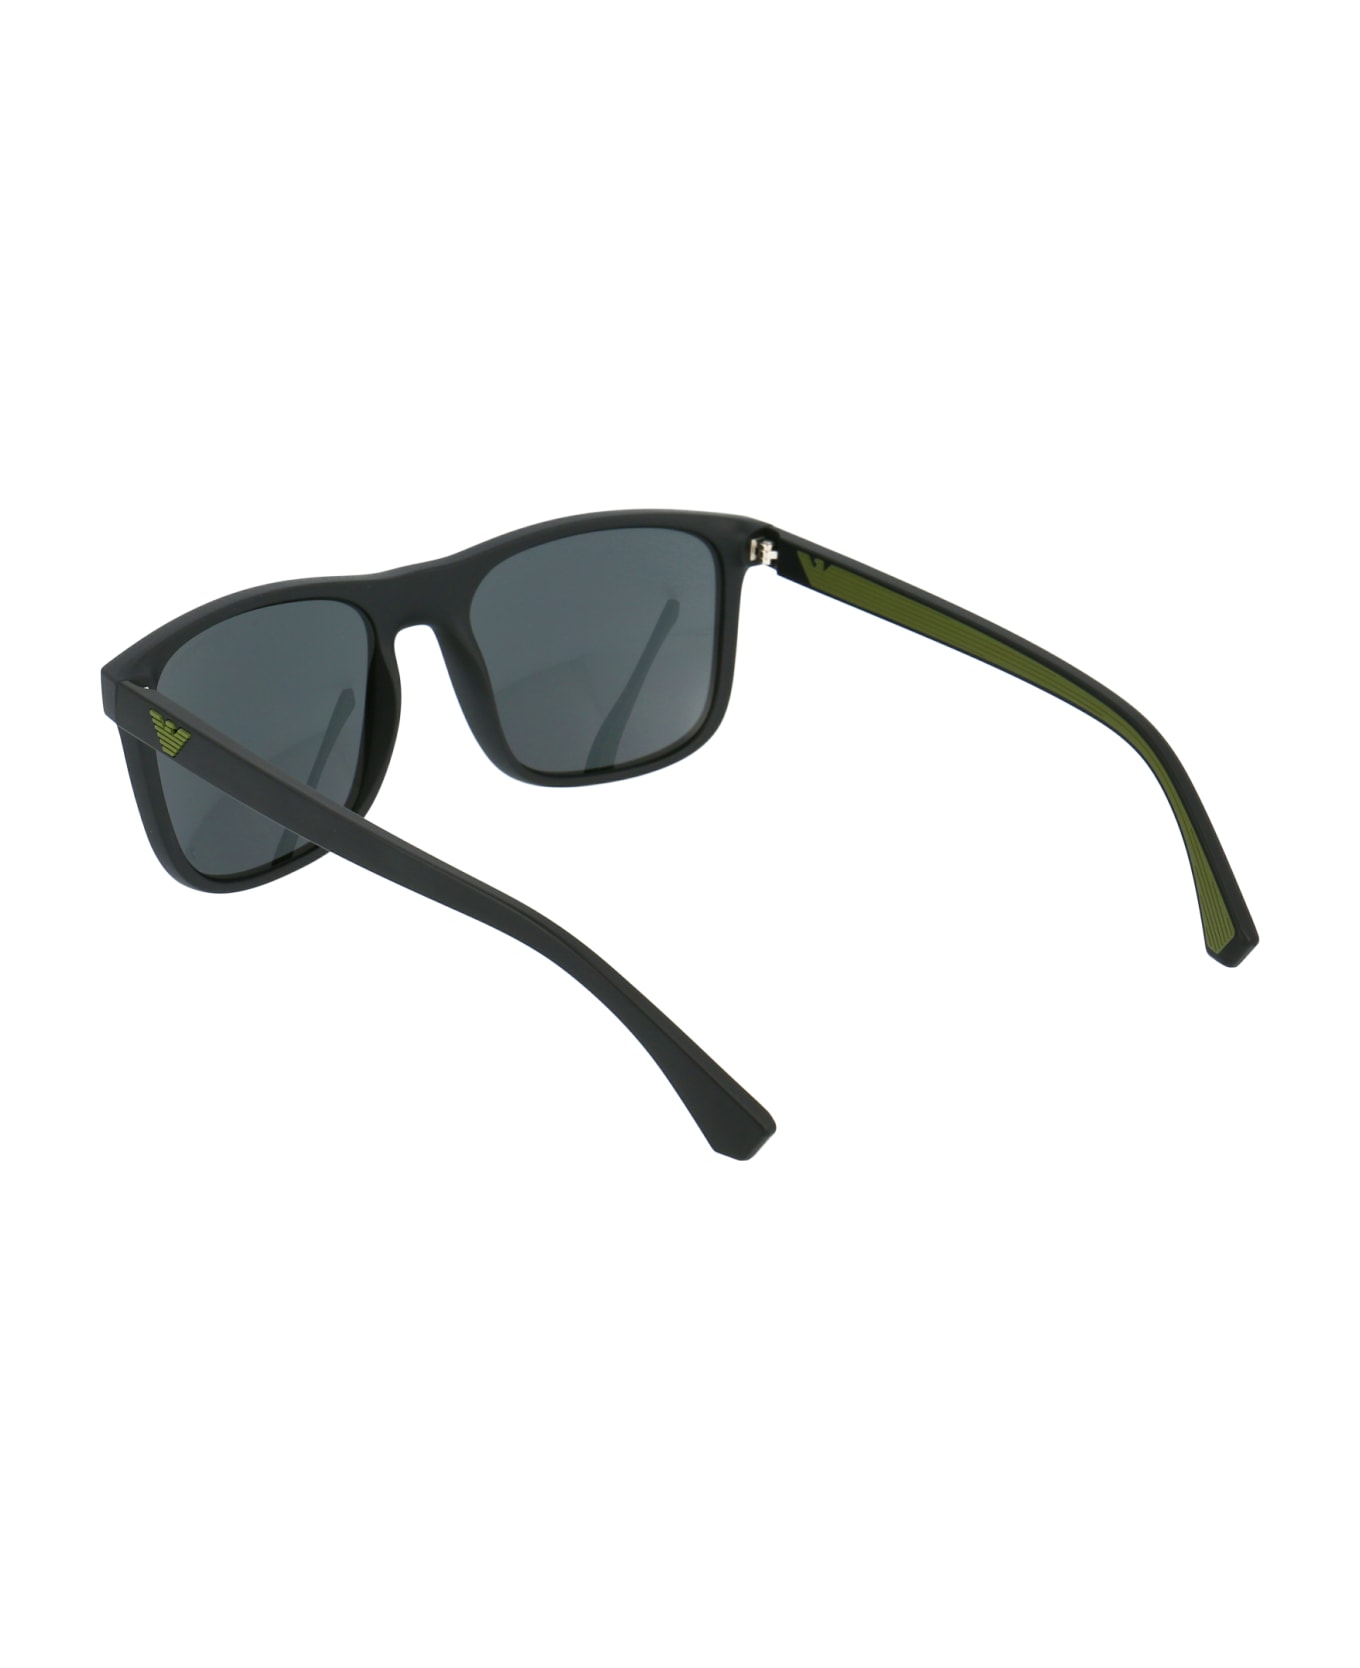 Emporio Armani 0ea4129 Sunglasses - 504287 MATTE BLACK